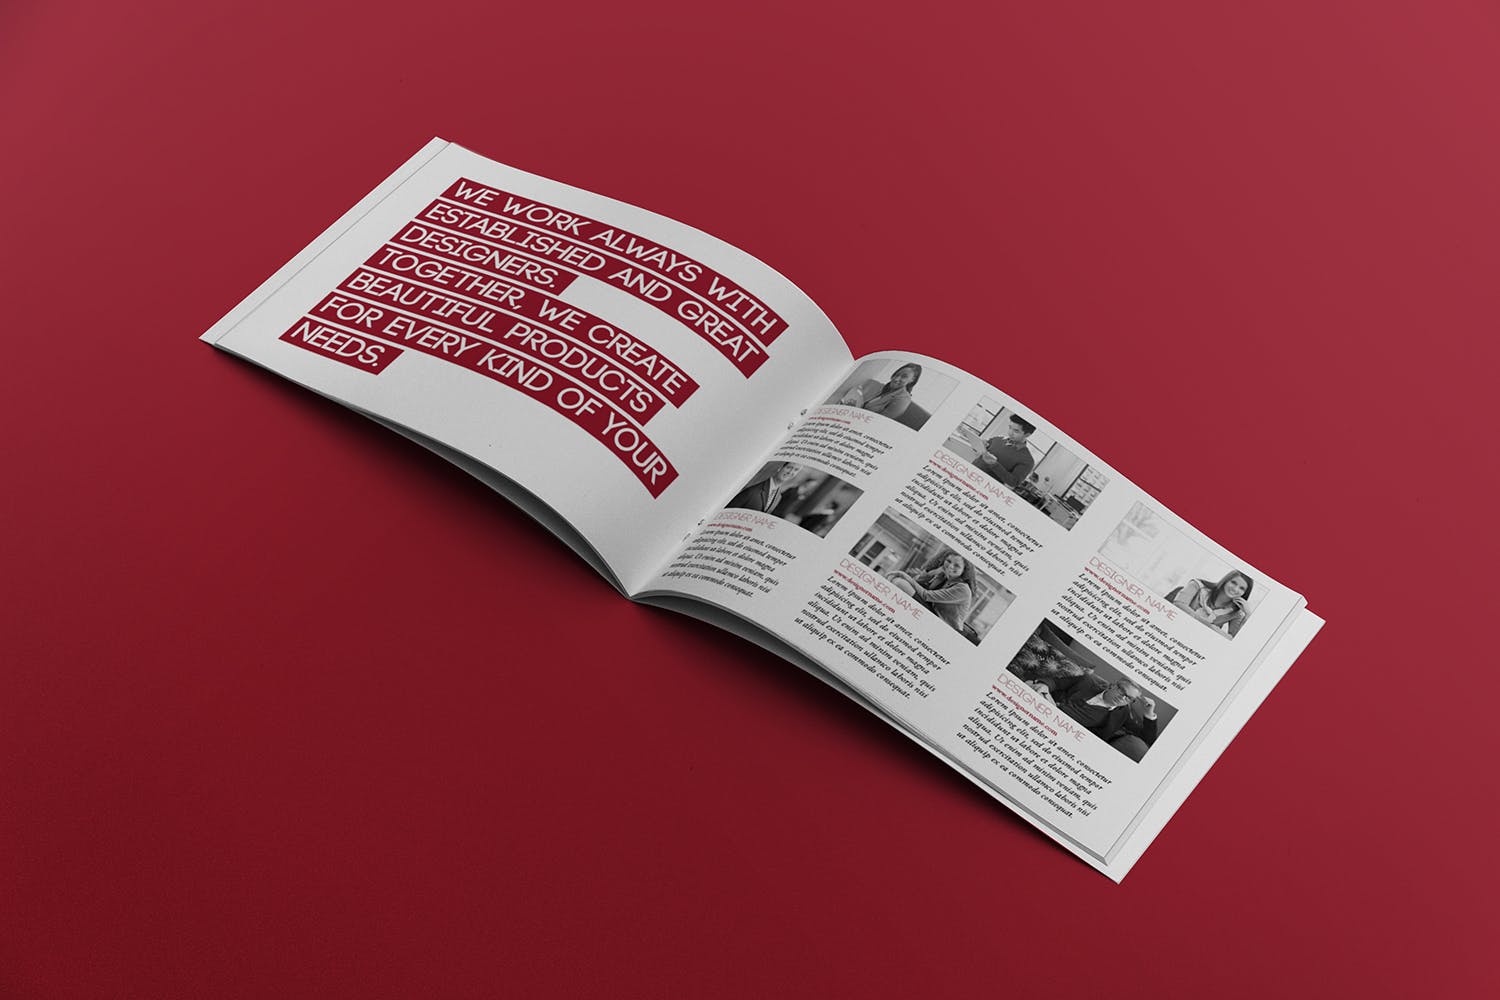 宣传画册/企业画册内页版式设计图样机蚂蚁素材精选 Open Landscape Brochure Mockup插图(2)